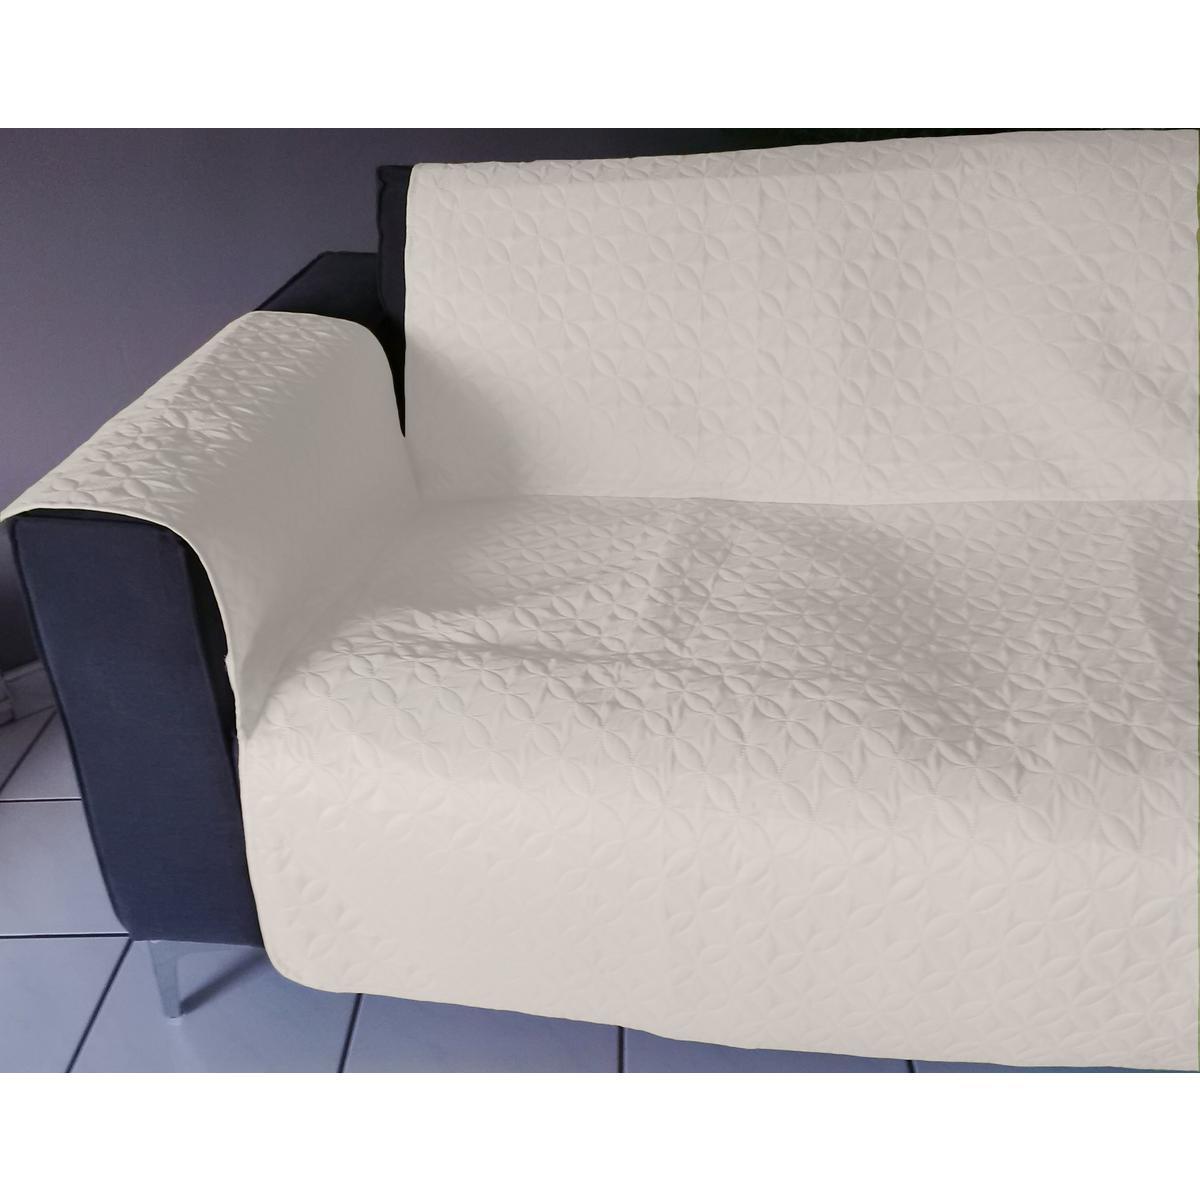 Protège-fauteuil - Microfibre - 179 x 169 cm - Blanc et gris